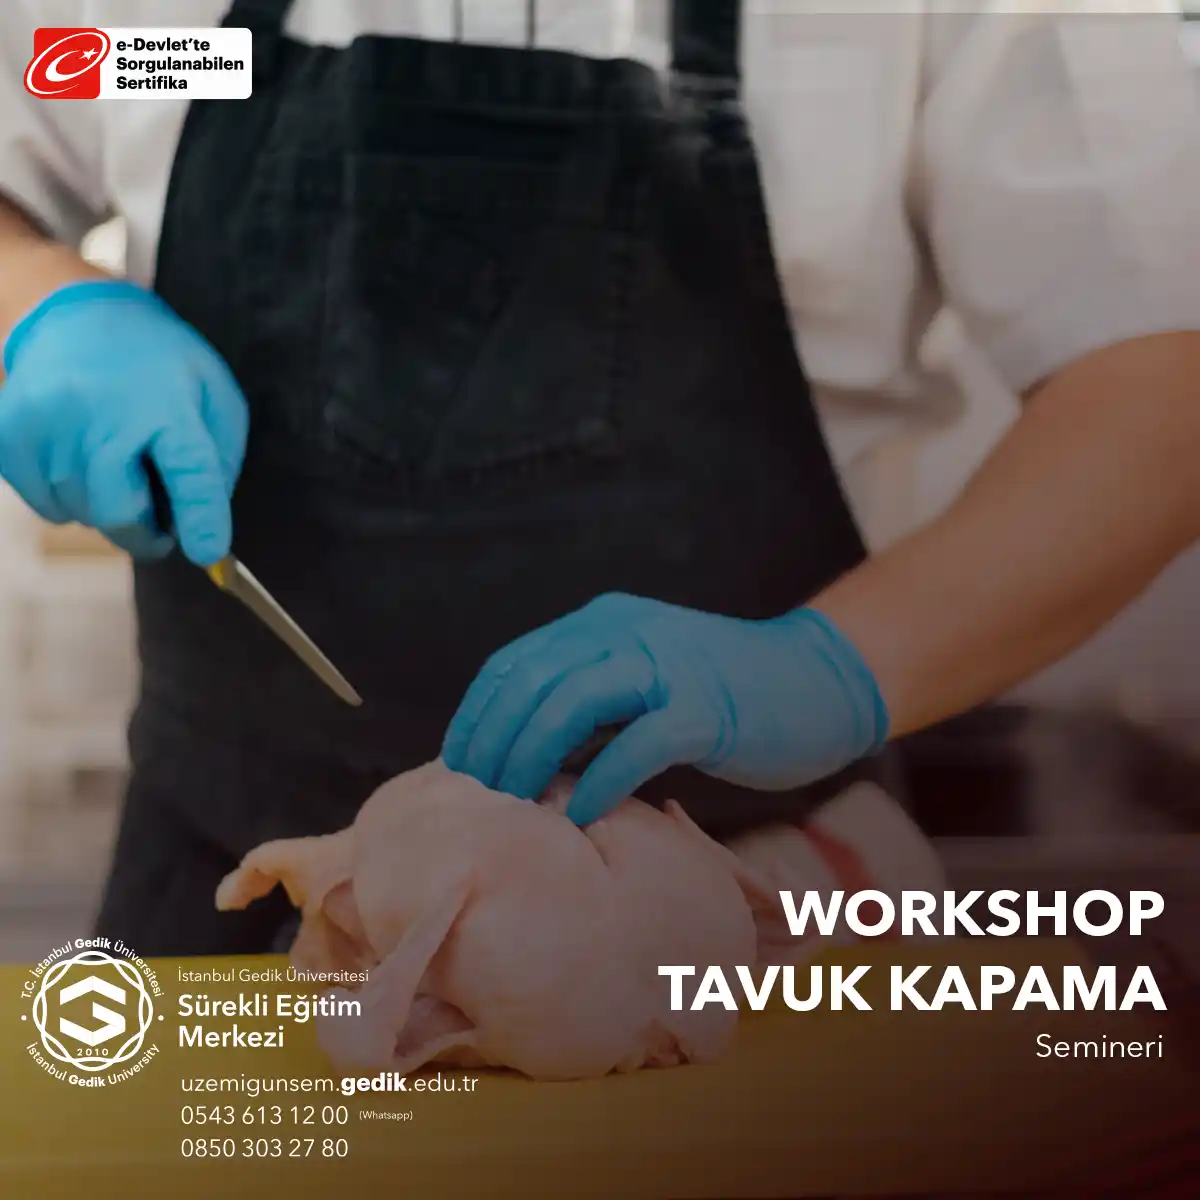 Tavuk Kapama Semineri, Türk mutfağına ilgi duyan kişilere veya farklı mutfak deneyimleri yaşamak isteyenlere yönelik keyifli bir eğitimdir.